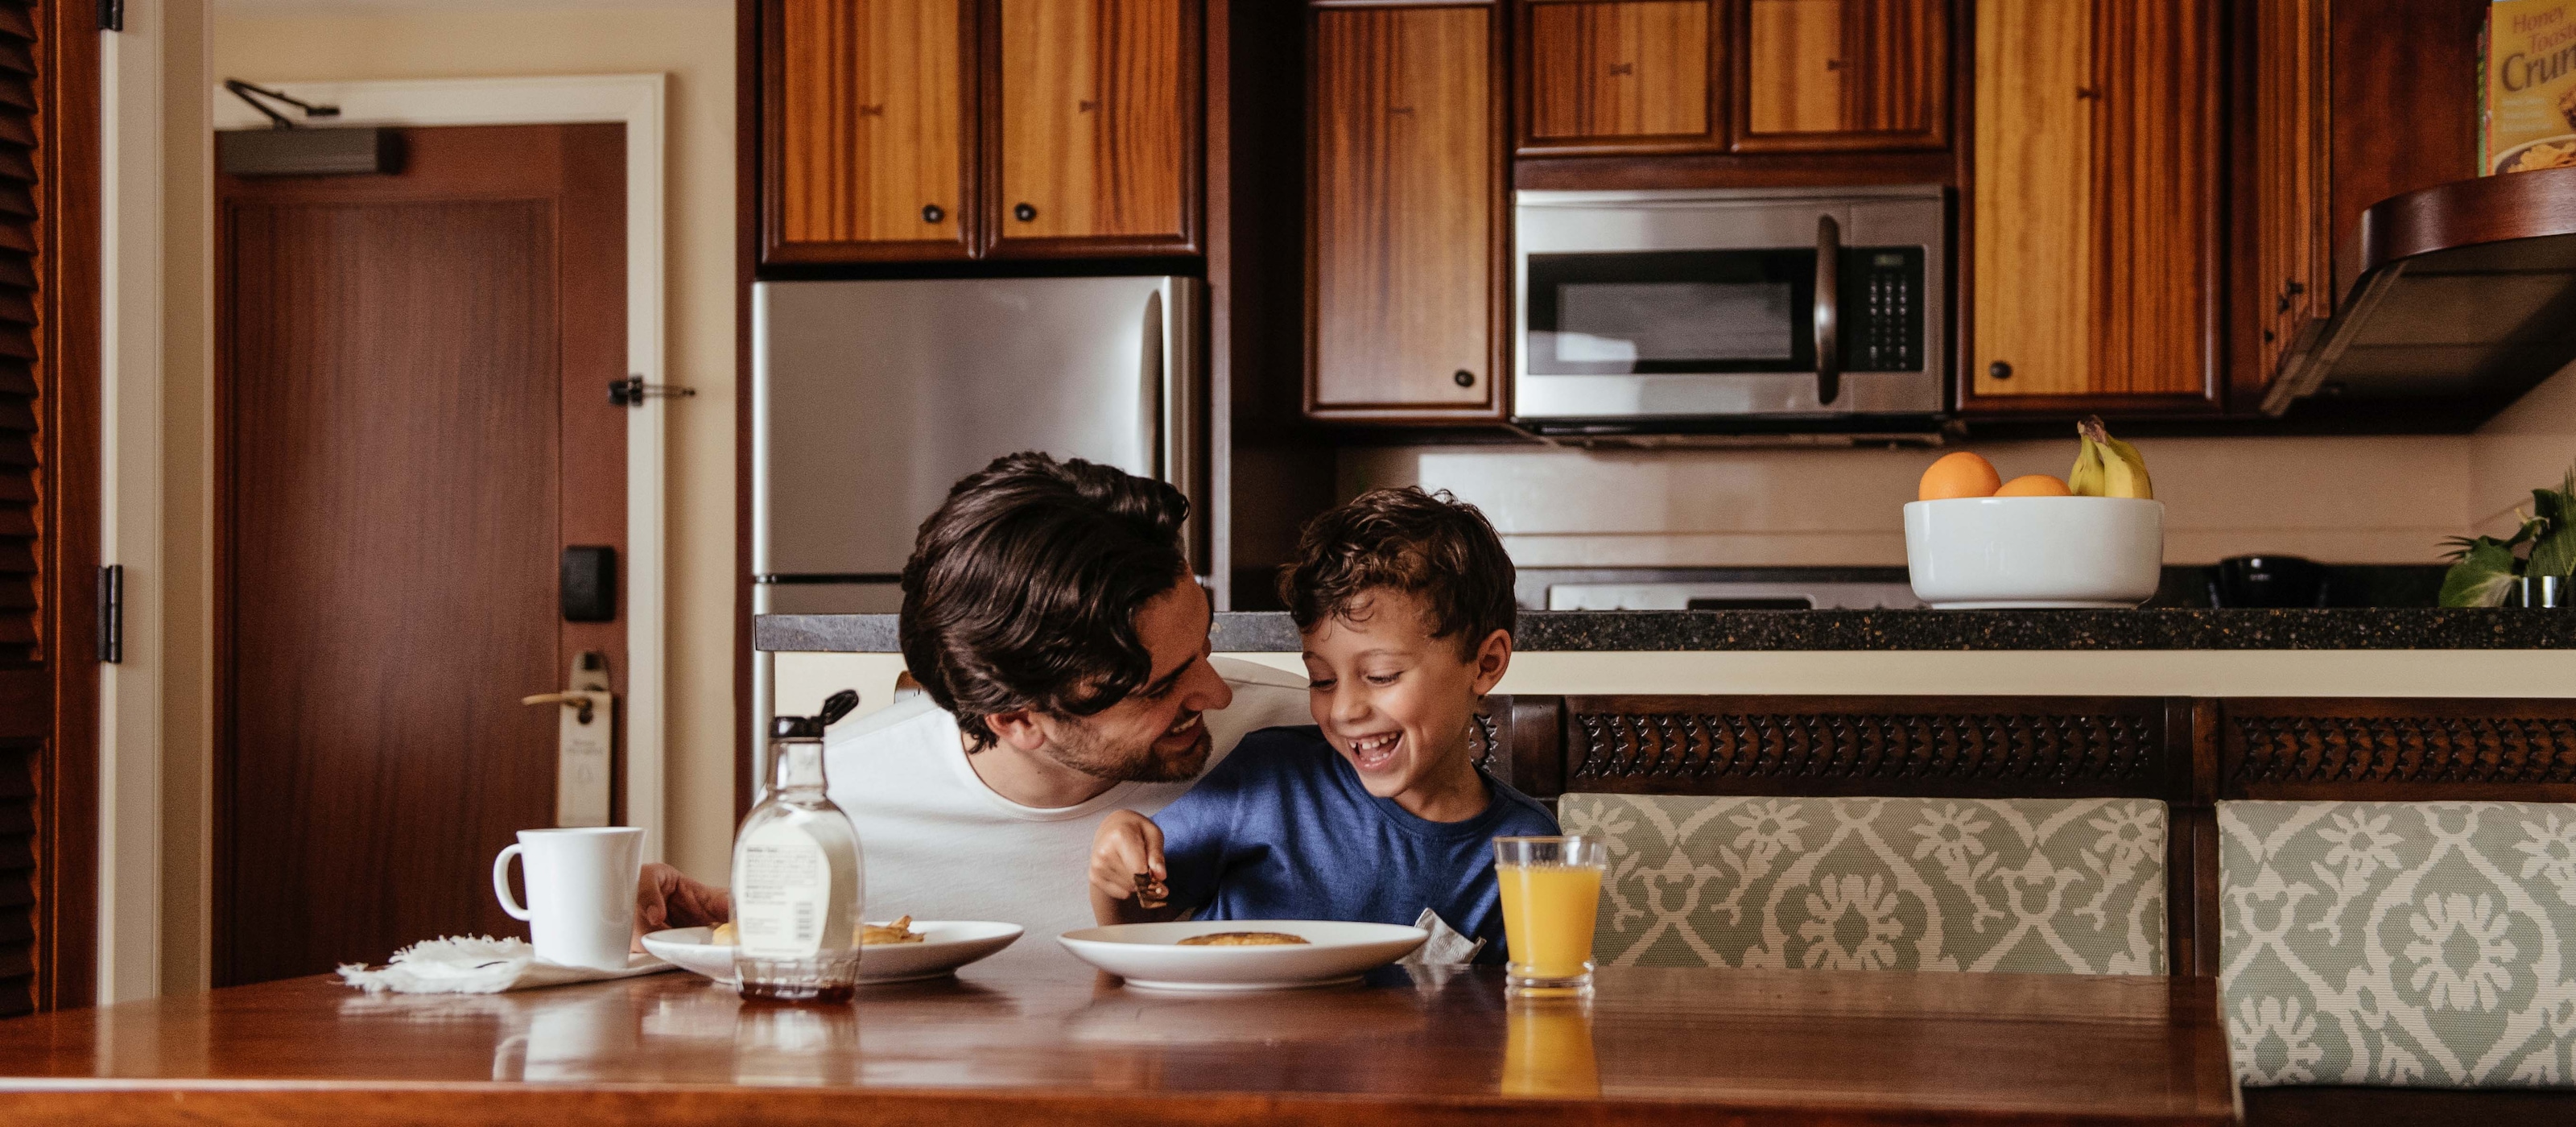 キッチンでホットケーキを食べながら笑い合うお父さんと男の子